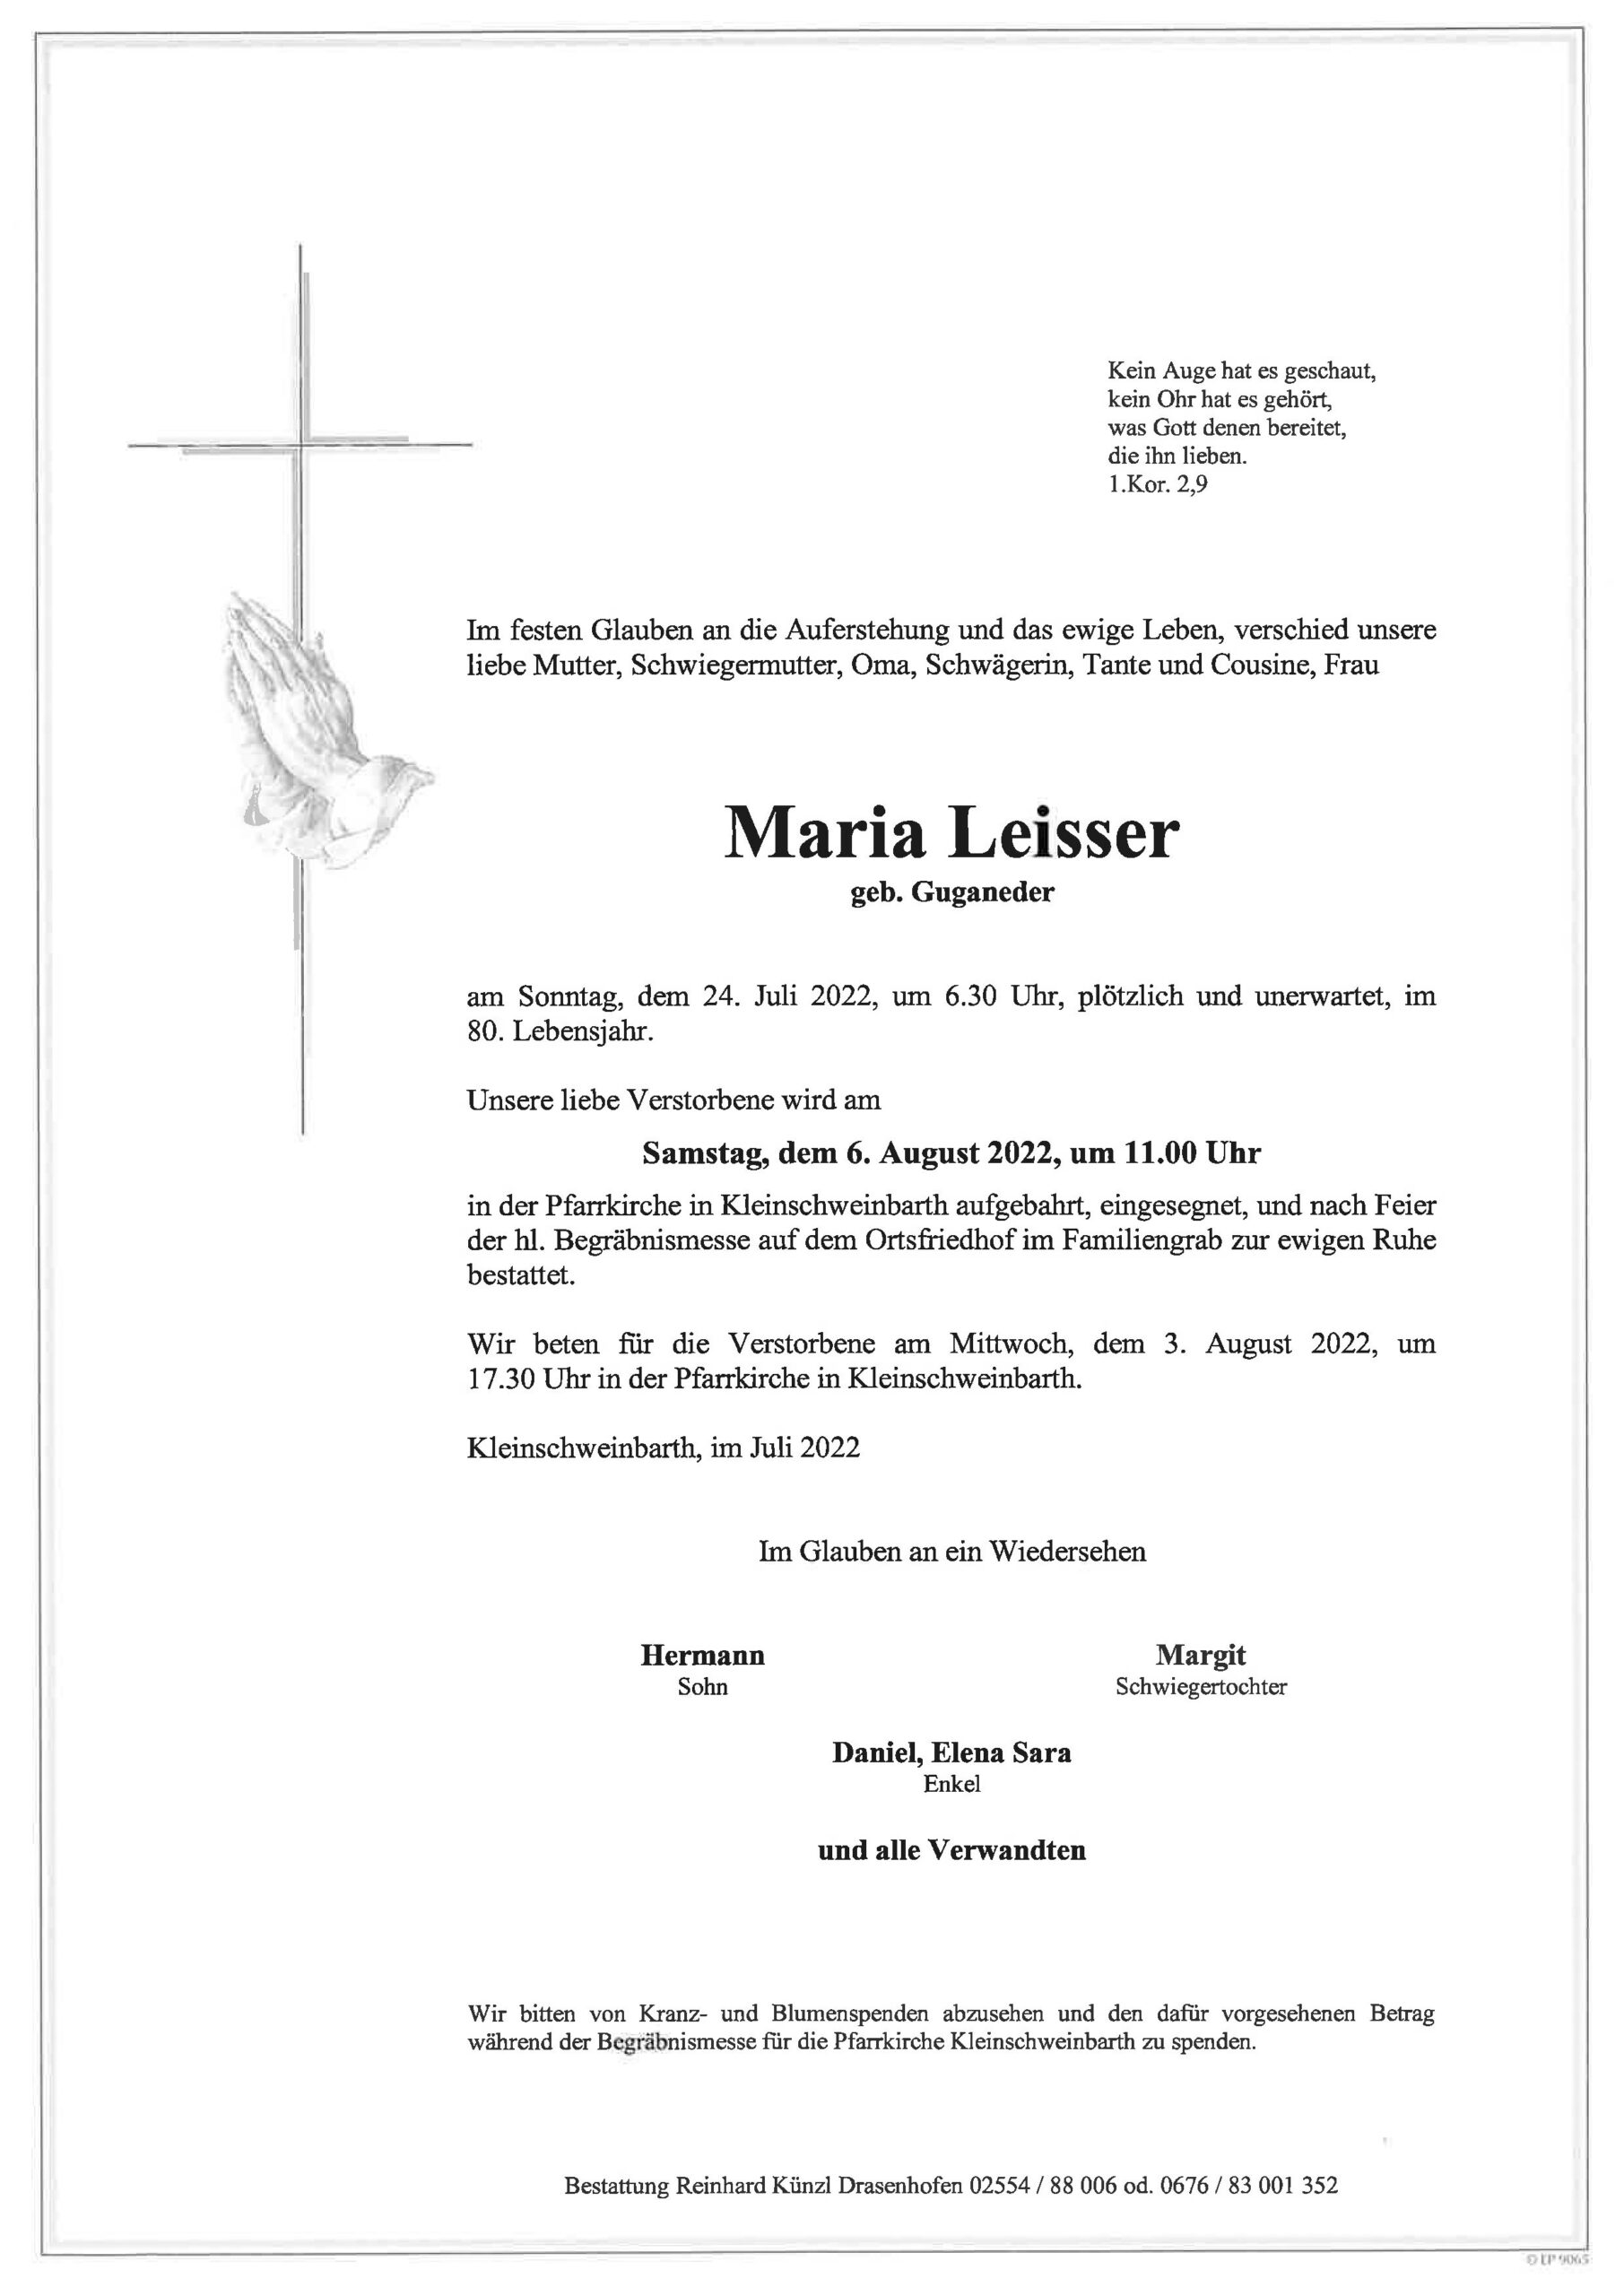 Maria Leisser | Bestattung Künzl